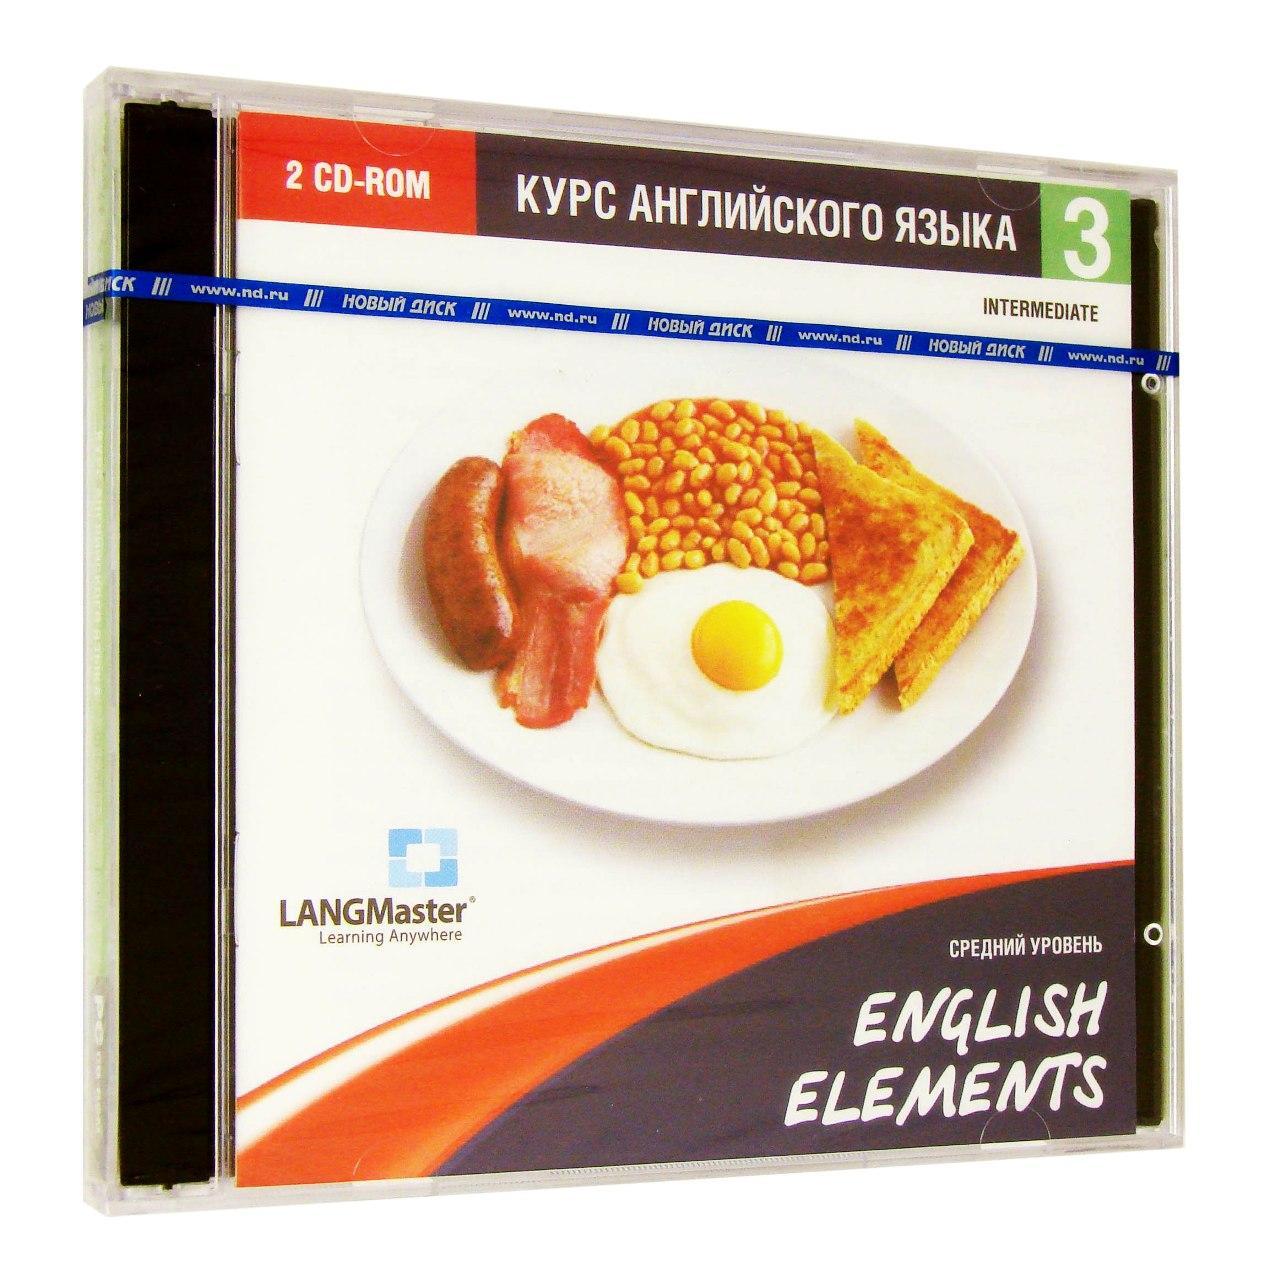 Компьютерный компакт-диск English Elements. Средний уровень (ПК), фирма "Новый диск", 1CD